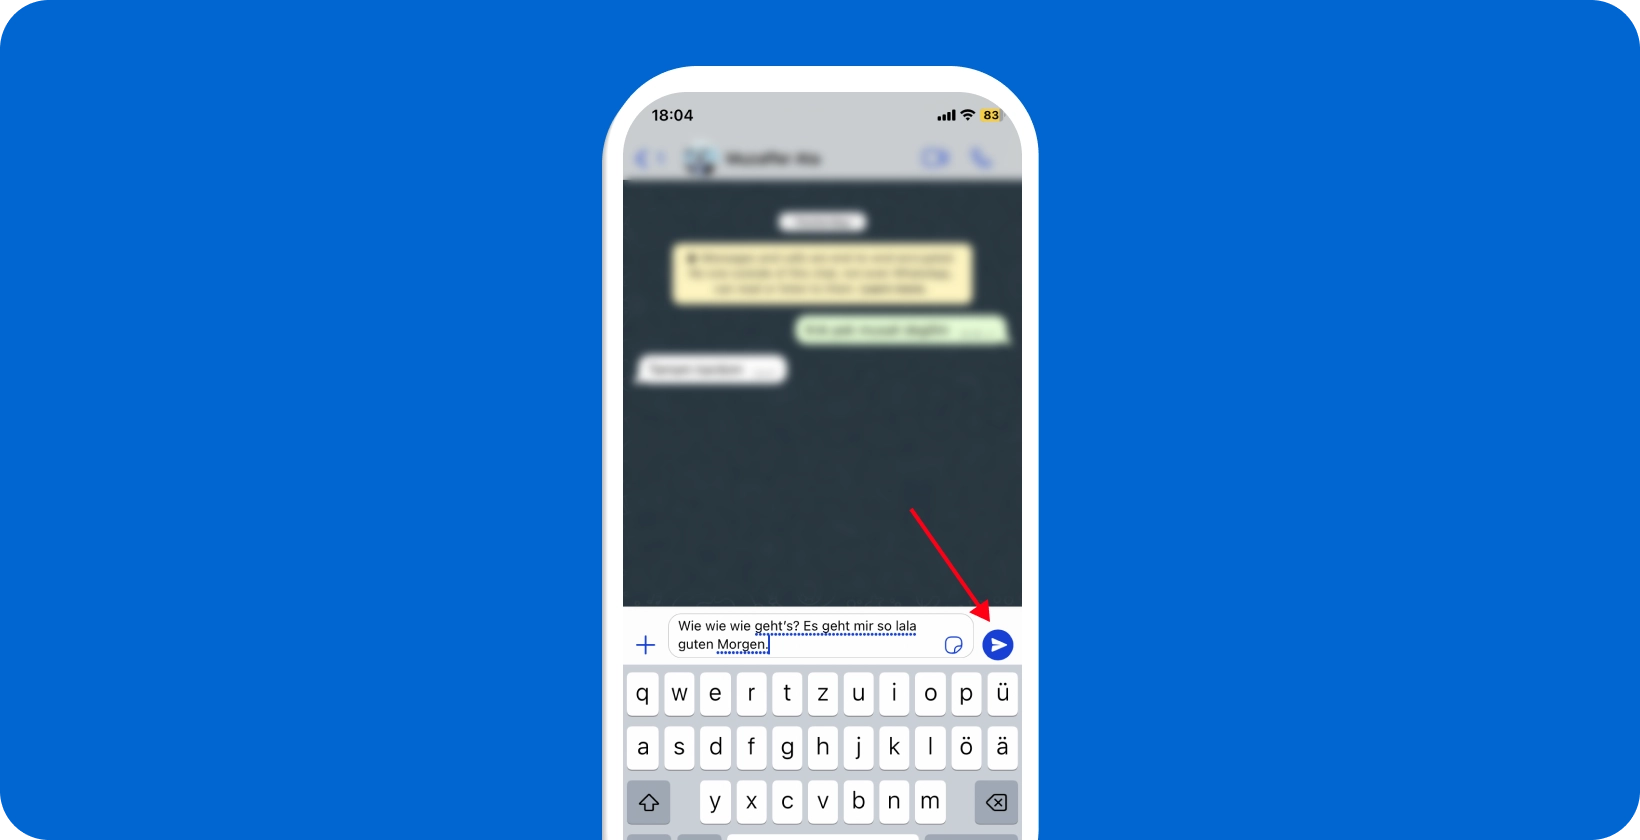 Skrin telefon pintar menunjukkan ciri imlak suara WhatsApp digunakan, dengan ikon mikrofon diserlahkan.